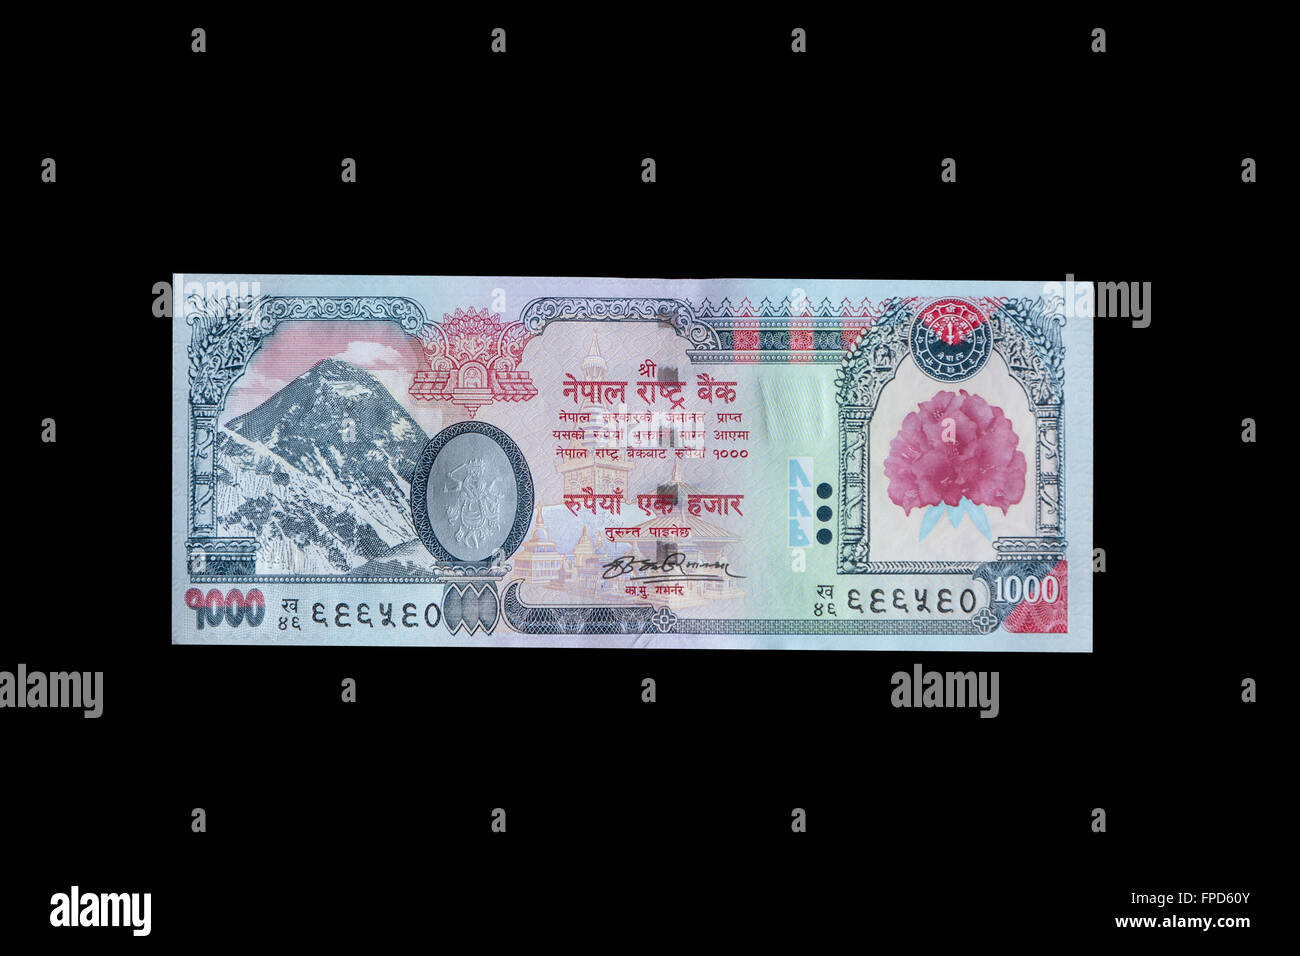 Nepal Moneda, 1000 Rupias, frontal, Mt. El Everest. Utiliza el alfabeto Devanagari. Foto de stock